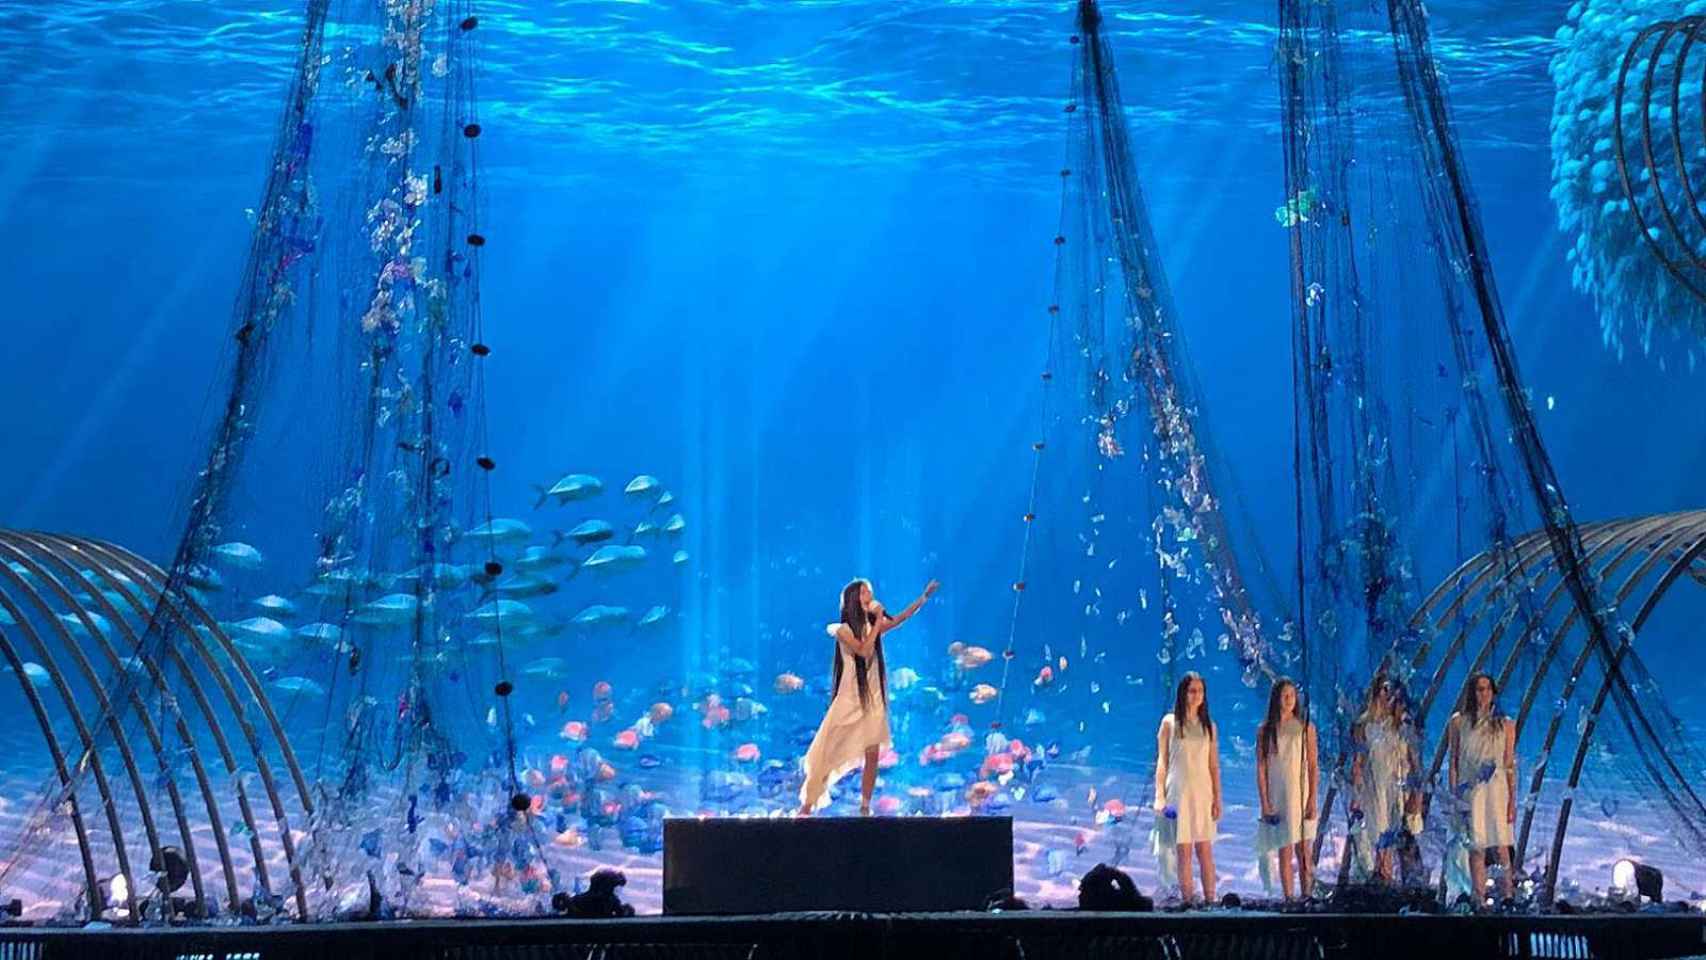 Primer ensayo de Melani en el escenario de Eurovisión Junior